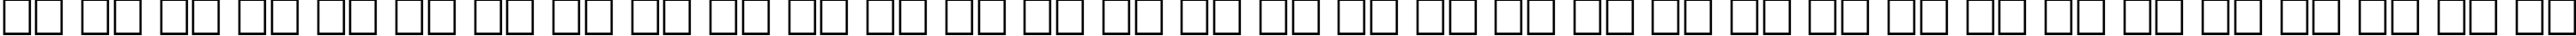 Пример написания русского алфавита шрифтом PlainBlack Normal